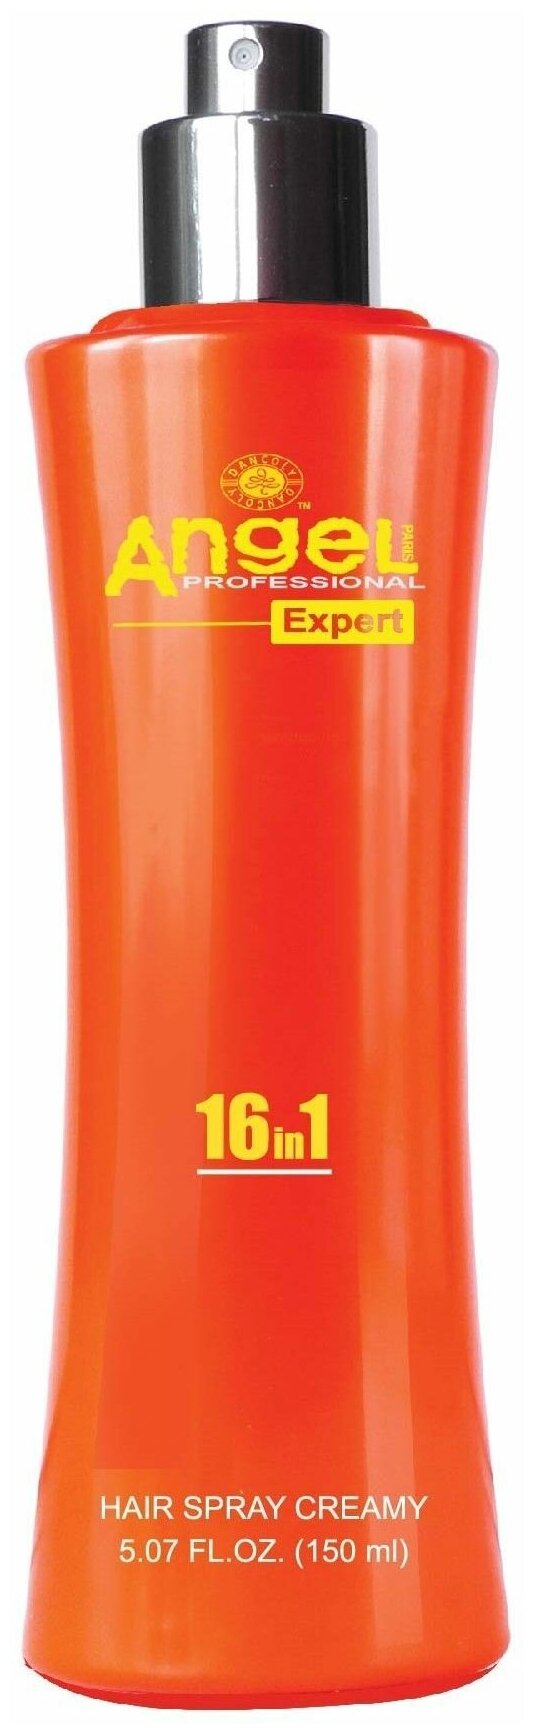 Angel Expert Крем-спрей для волос 16 в 1 для защиты и блеска волос Hair Spray Creamy, 150 мл